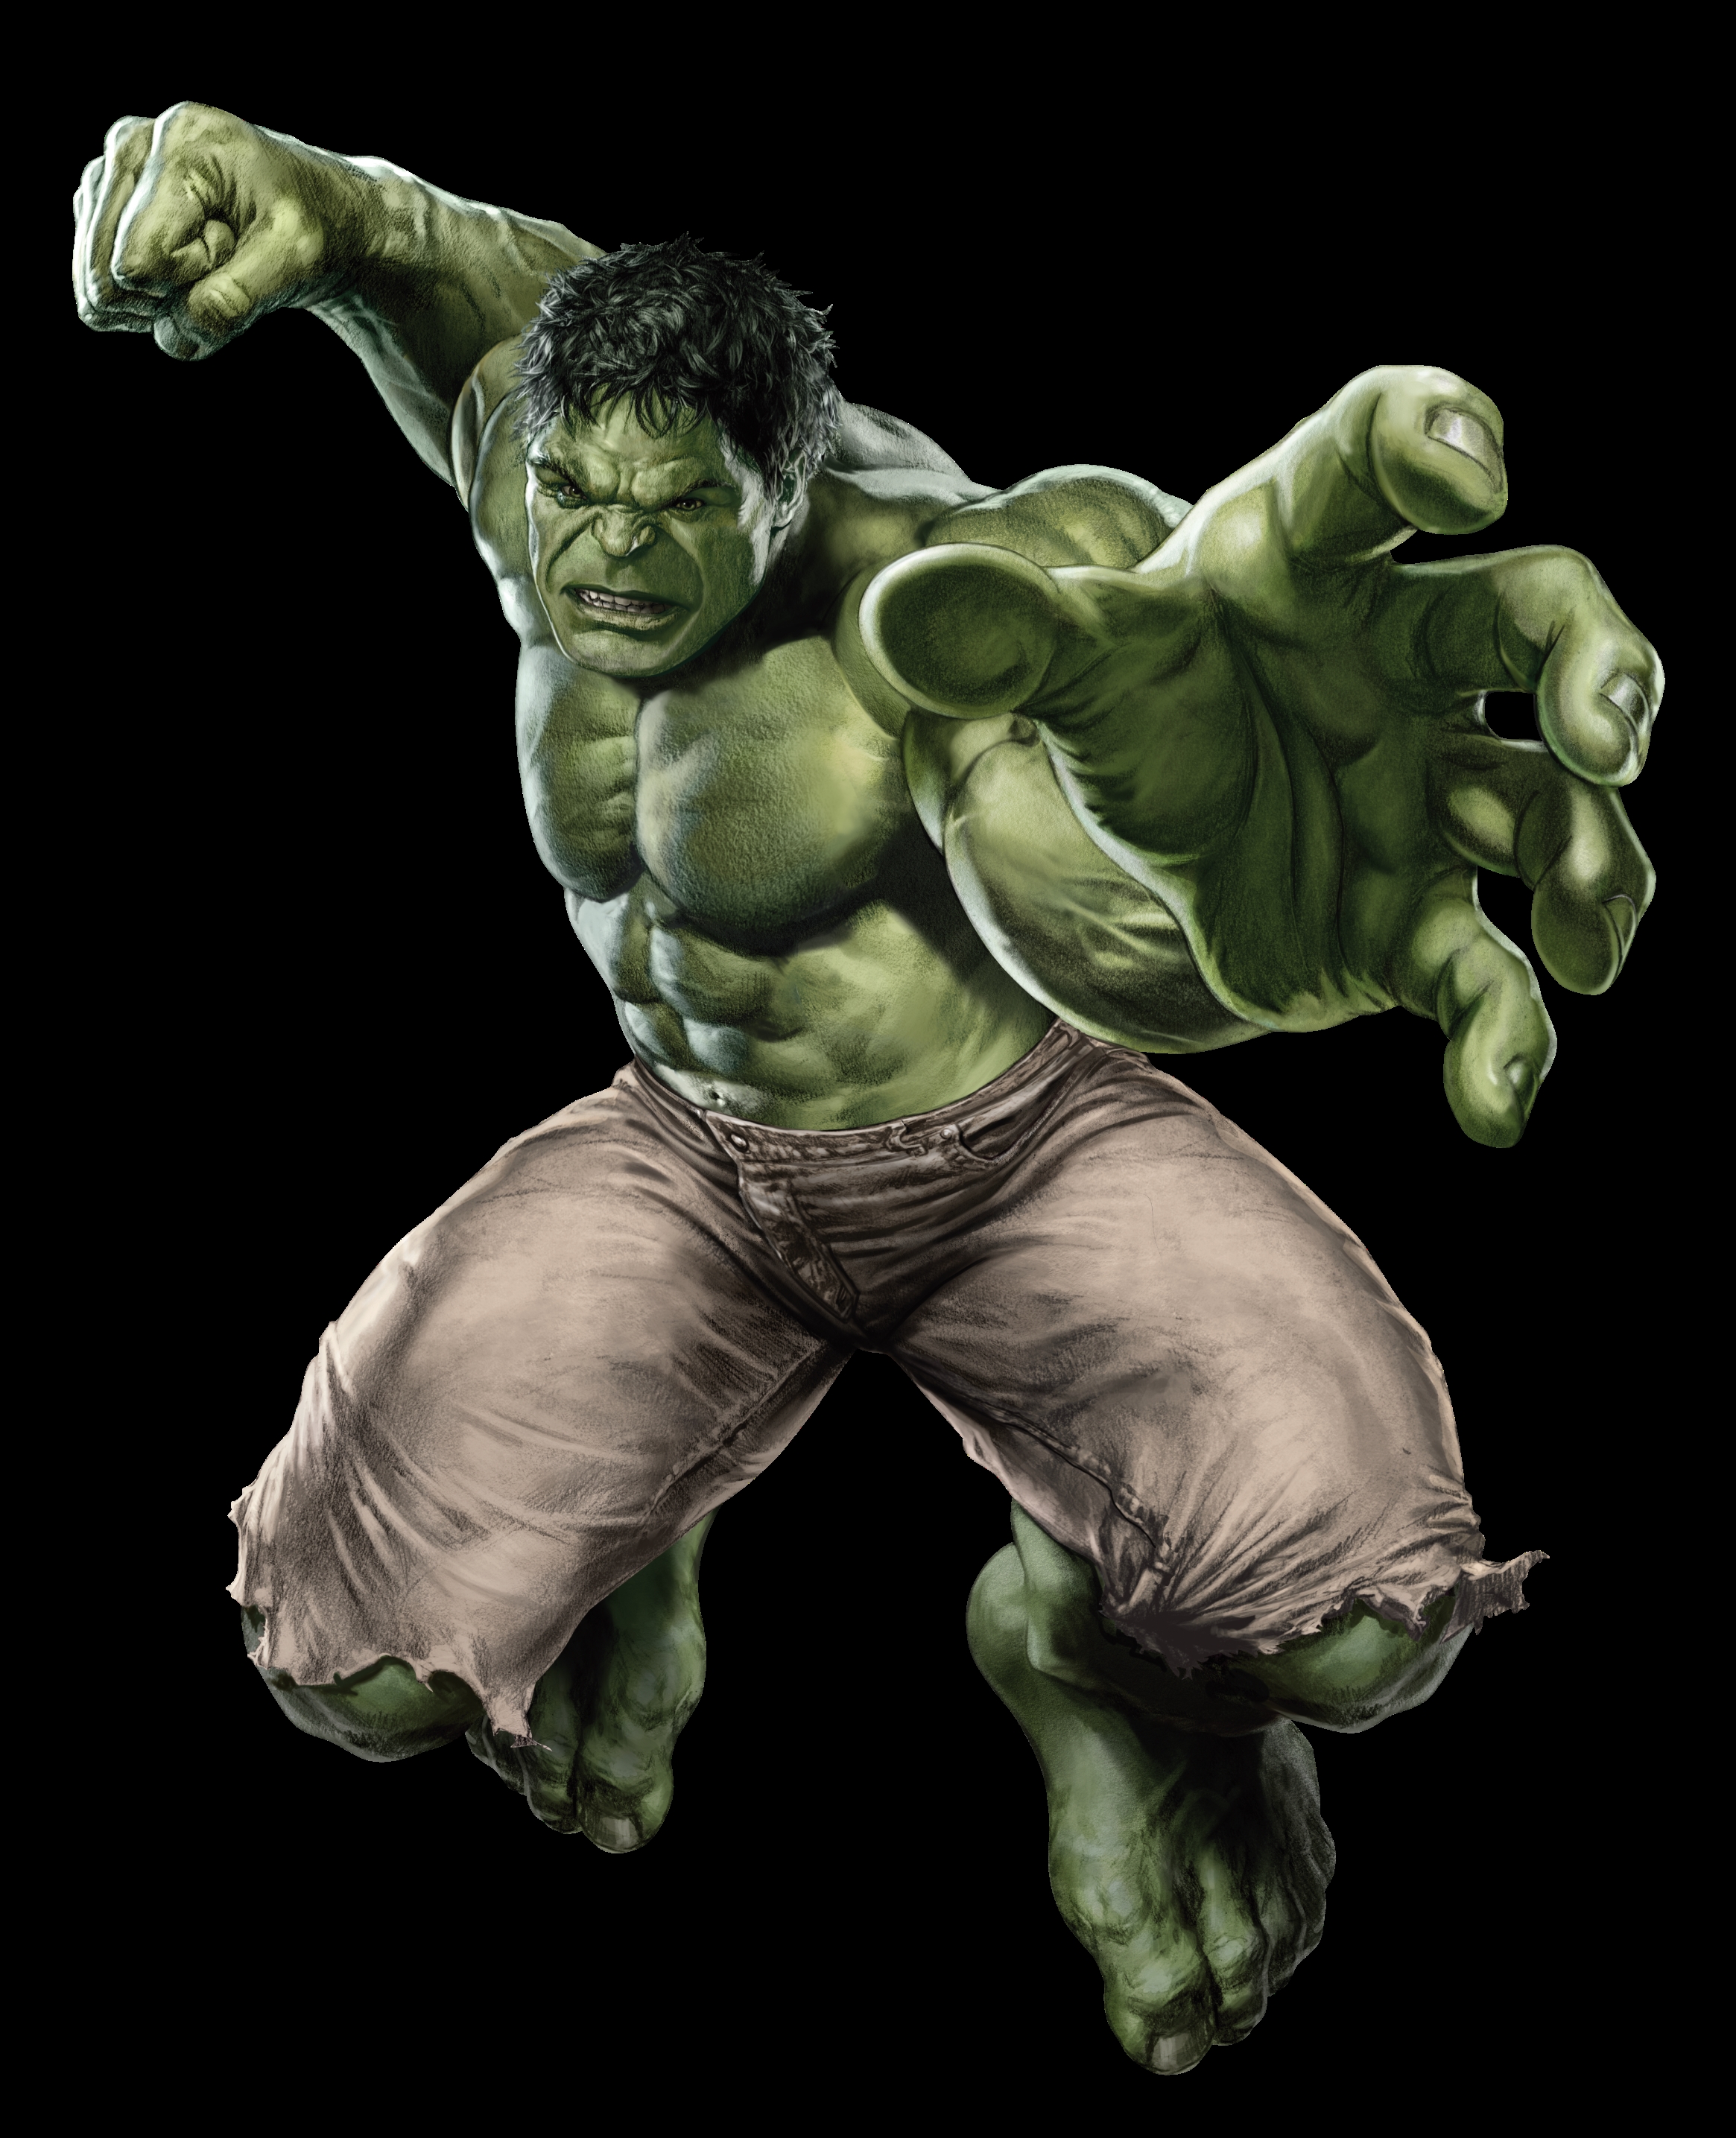 Animasi Hulk 3d Terlengkap Dan Terupdate Top Animasi